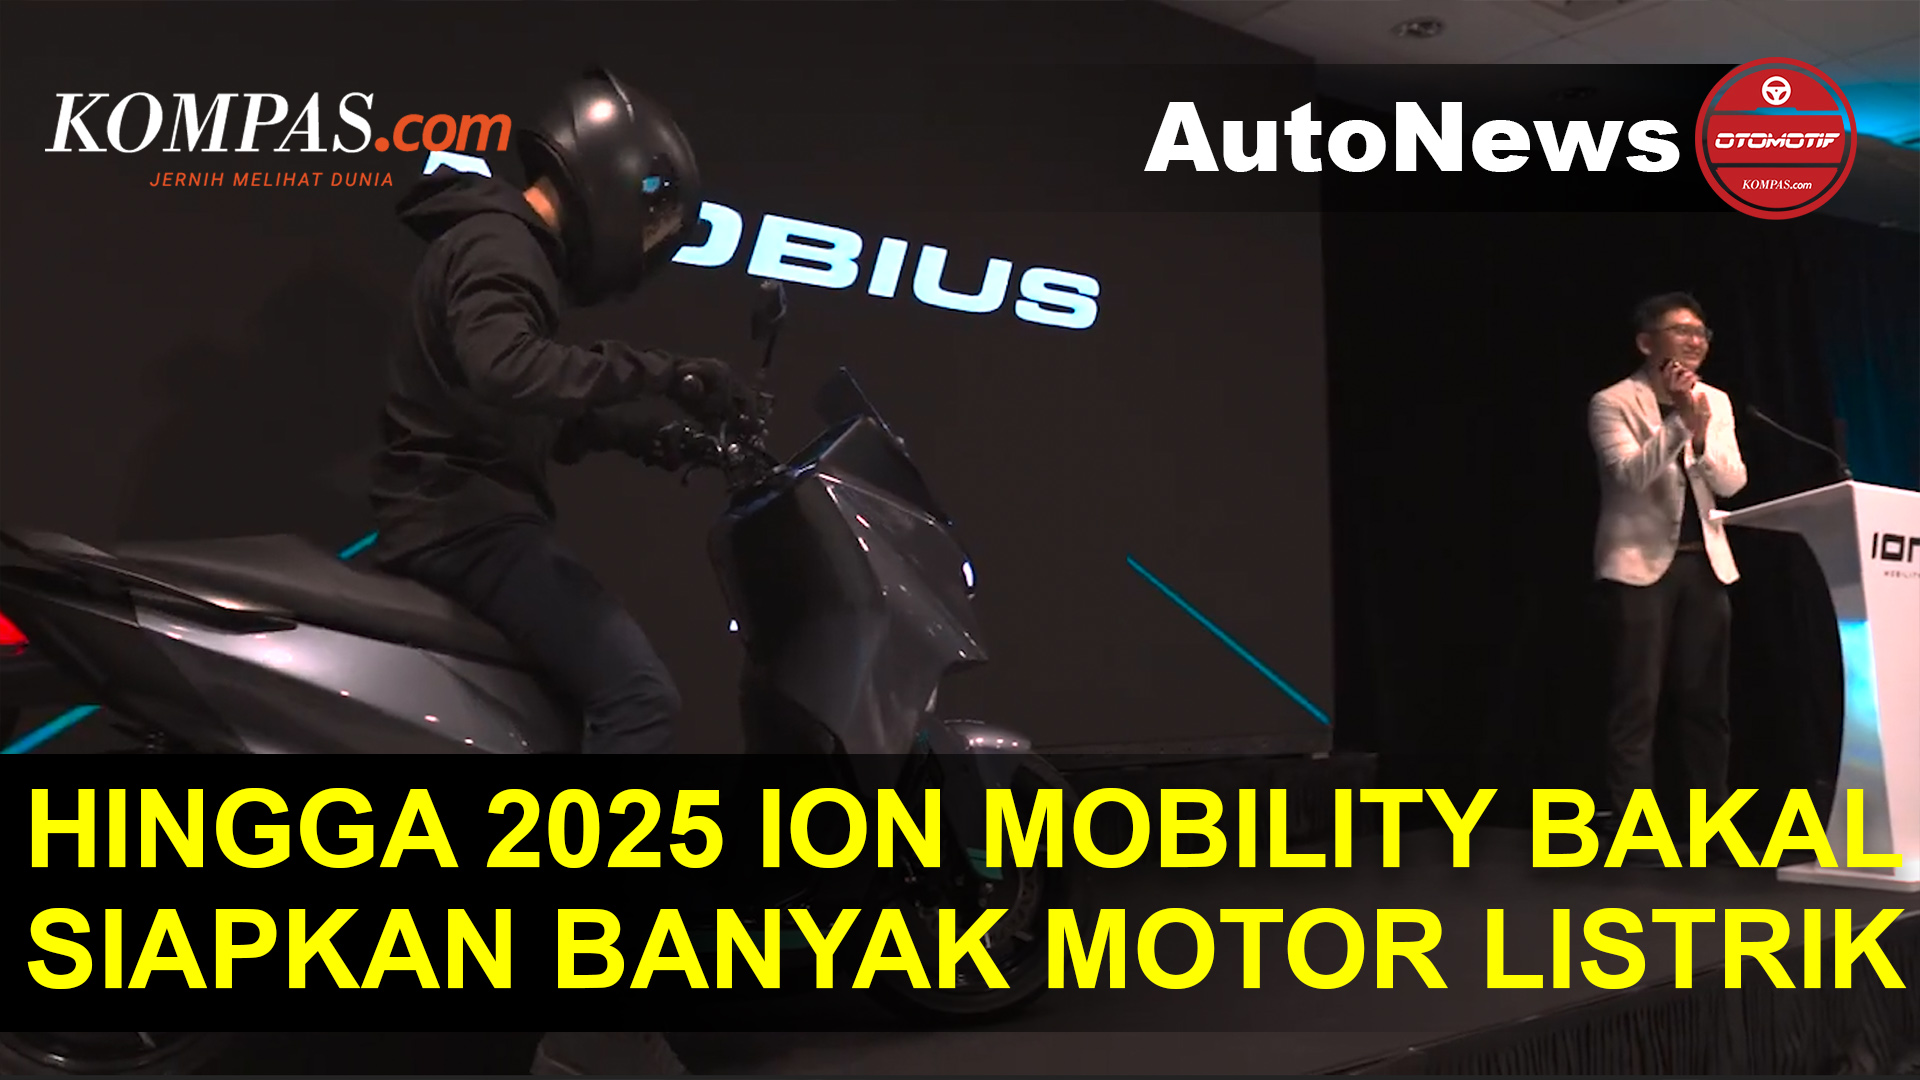 ION Mobility Siapkan Banyak Motor Listrik Sampai 2025